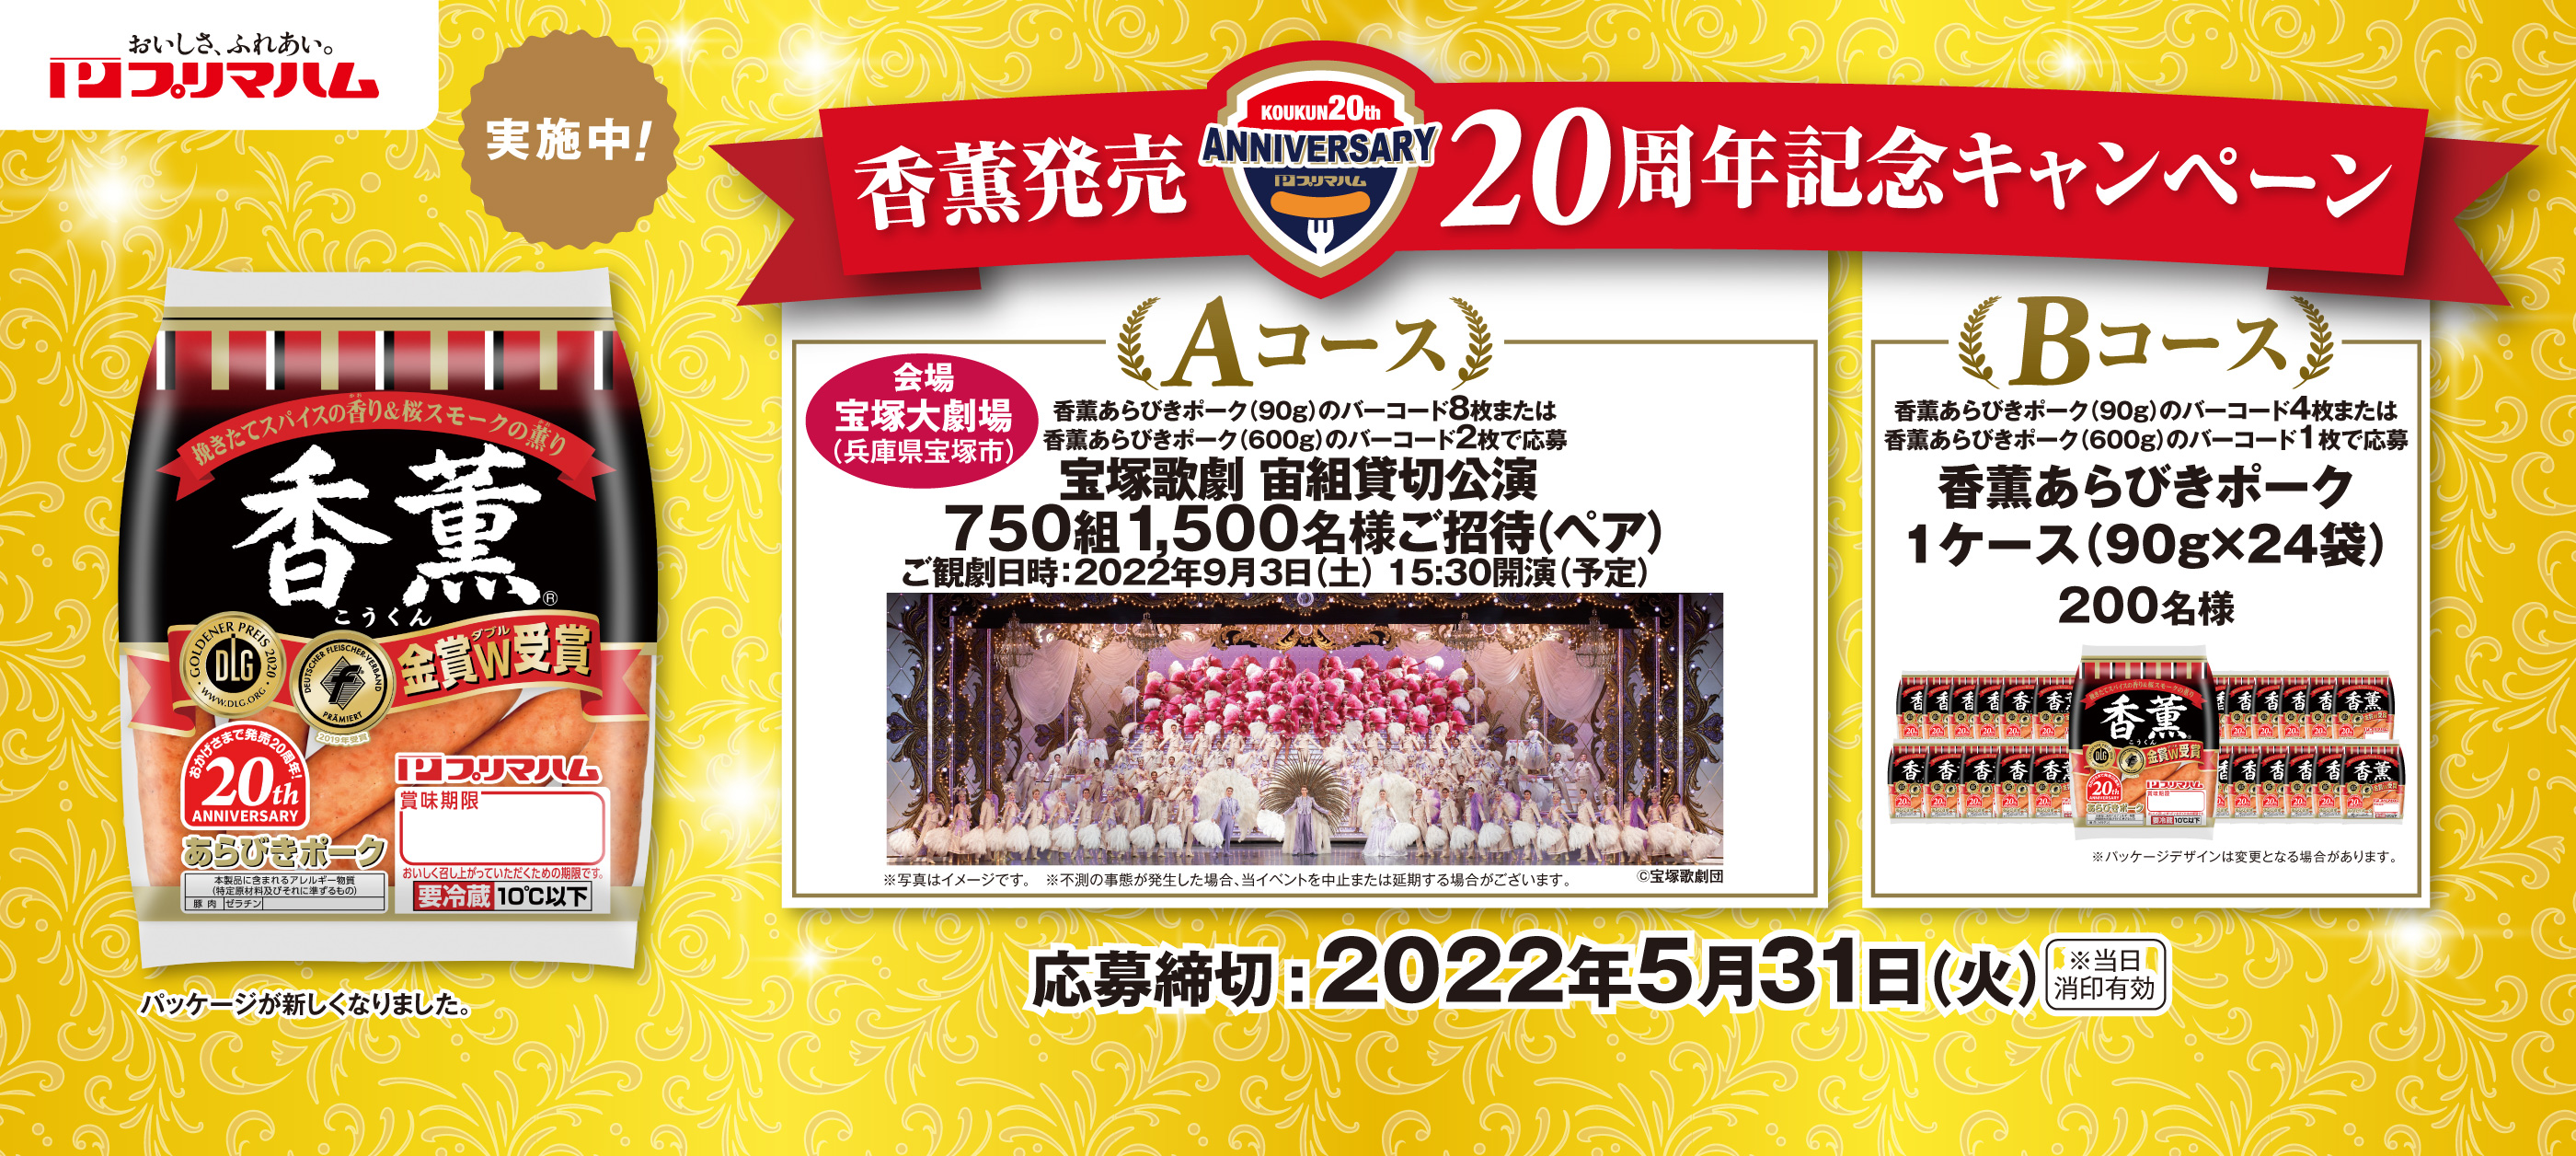 香薫発売20周年記念キャンペーン